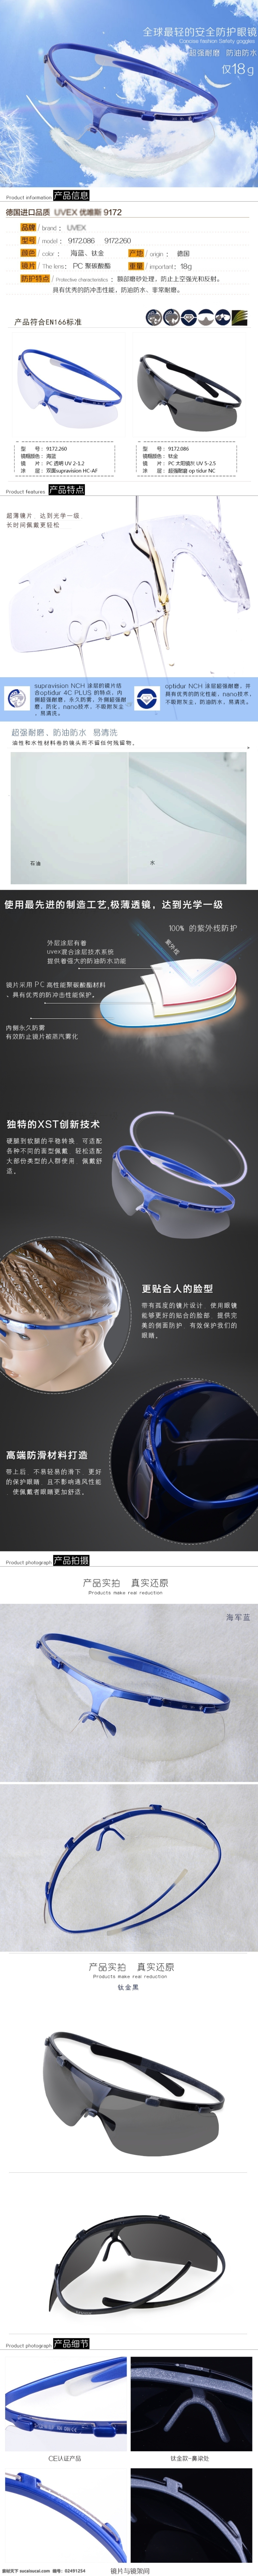 蓝色 运动 眼镜 详情 页 太阳镜 淘宝电商 框架 眼镜片